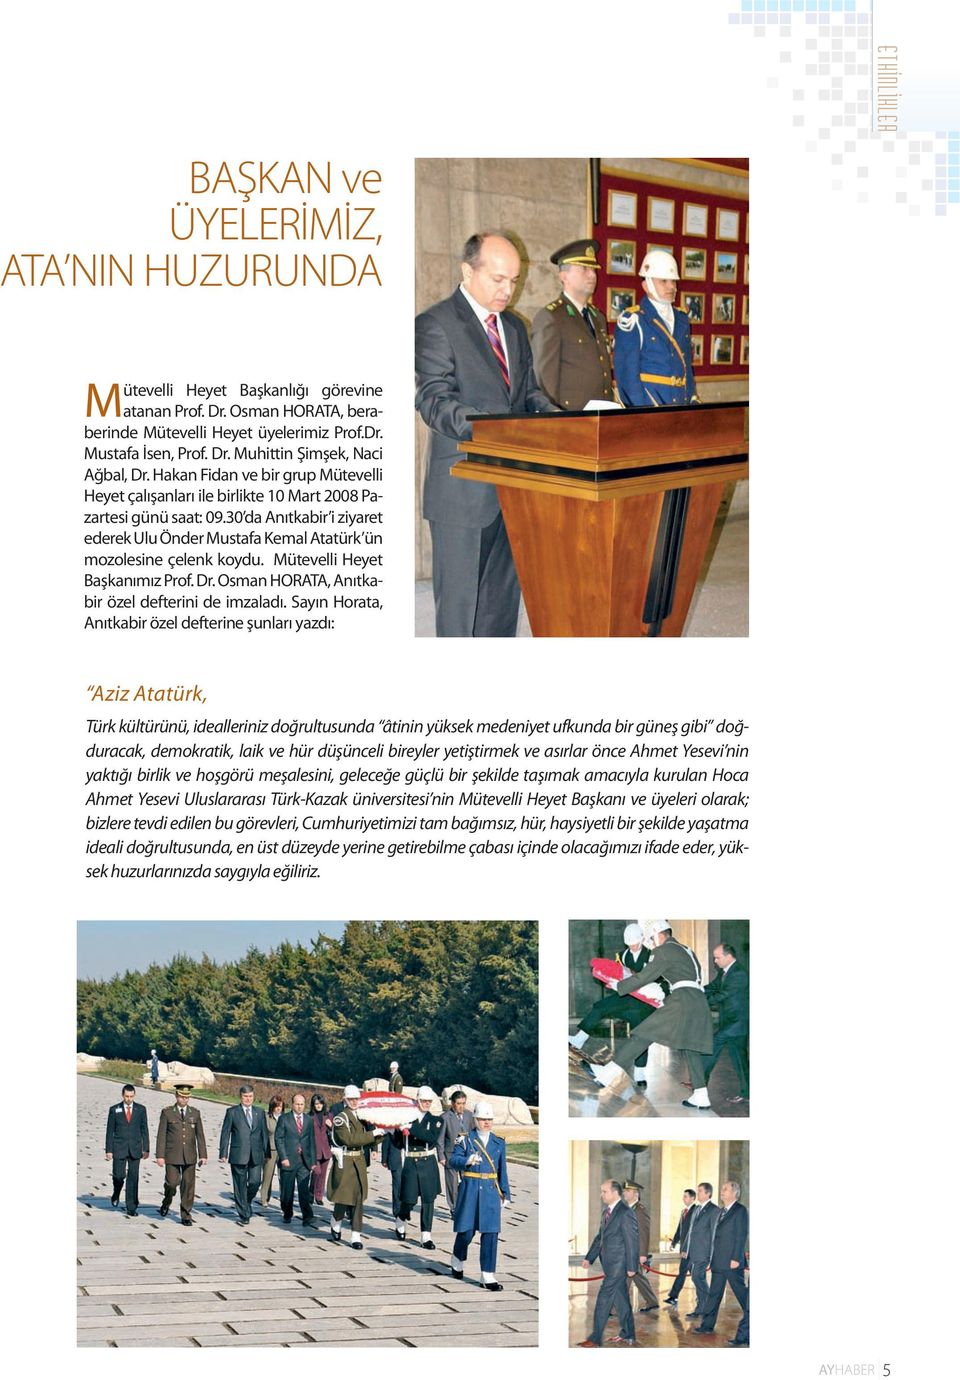 Mütevelli Heyet Başkanımız Prof. Dr. Osman HORATA, Anıtkabir özel defterini de imzaladı.